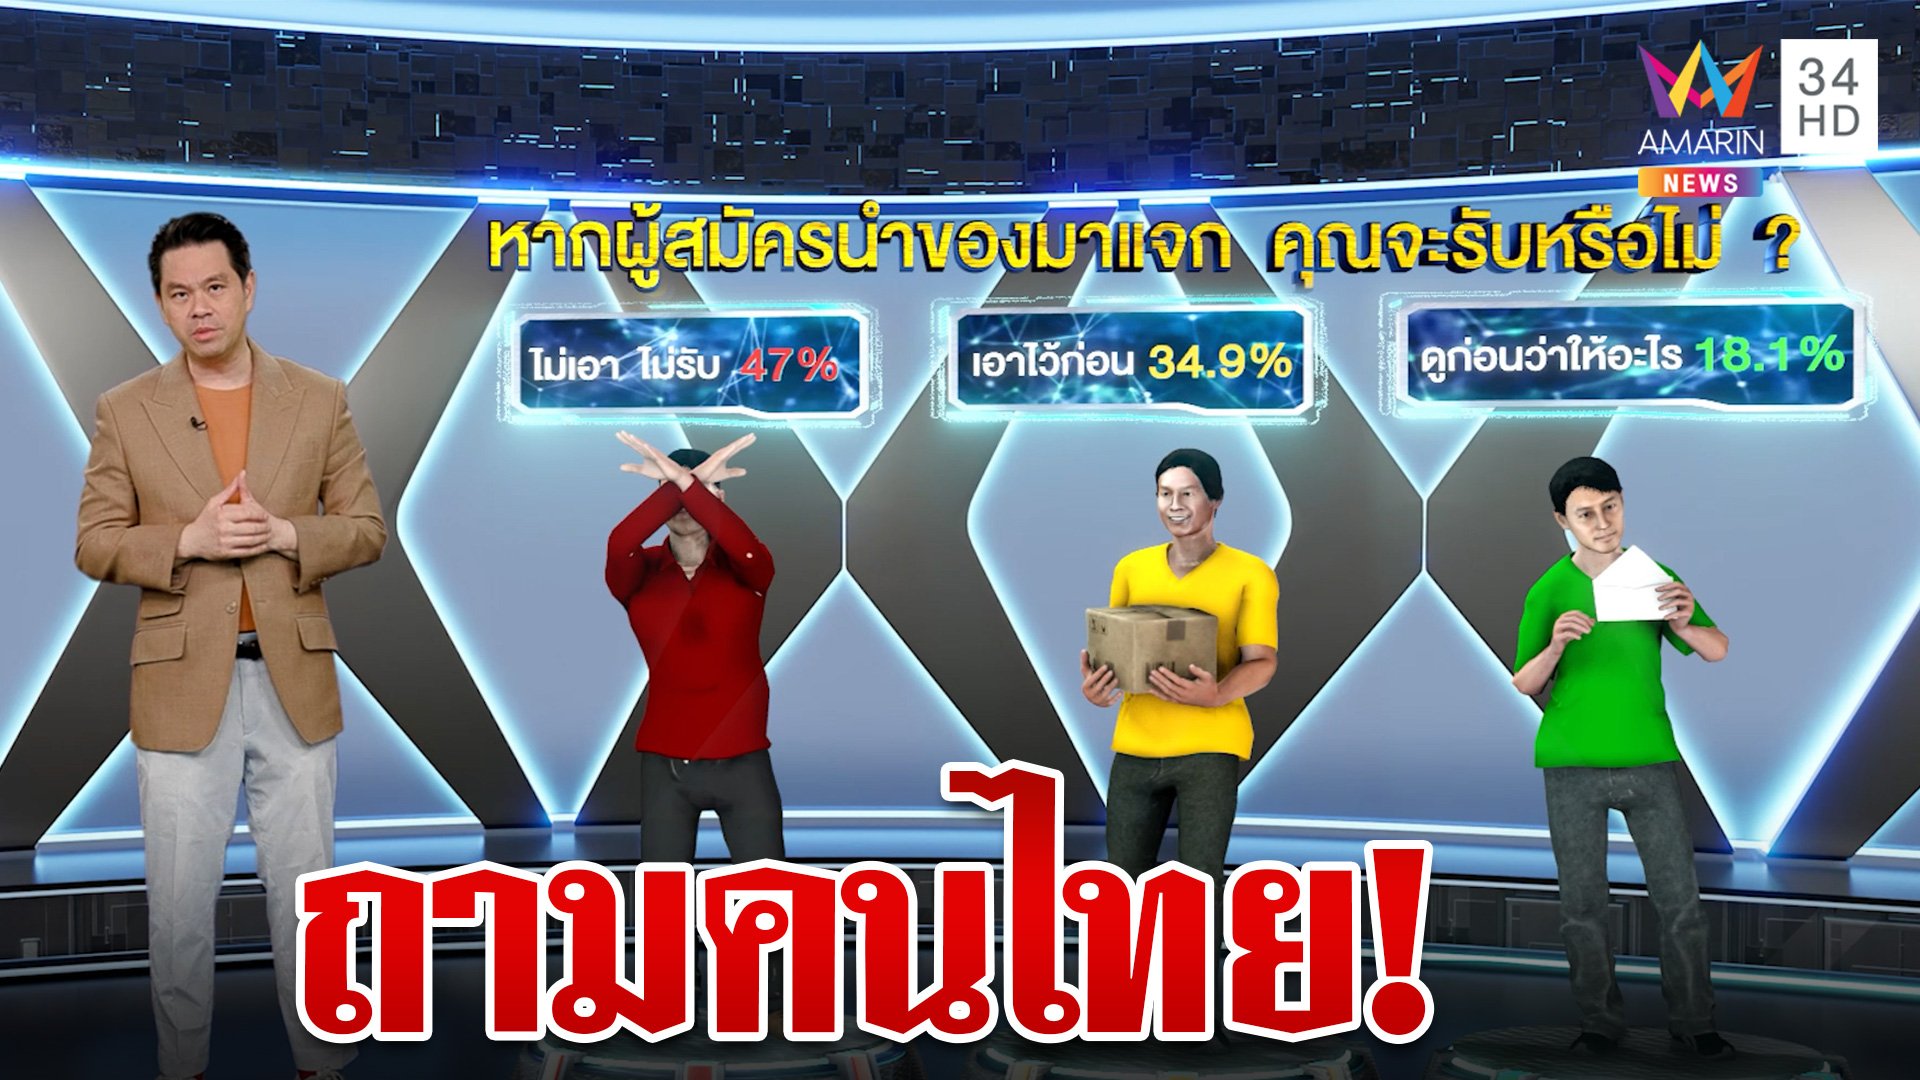 คำตอบน่าสนใจ! เมื่อคนไทยเจอสถานการณ์ผู้สมัครให้ของระหว่างหาเสียง | ทุบโต๊ะข่าว | 8 พ.ค. 66 | AMARIN TVHD34